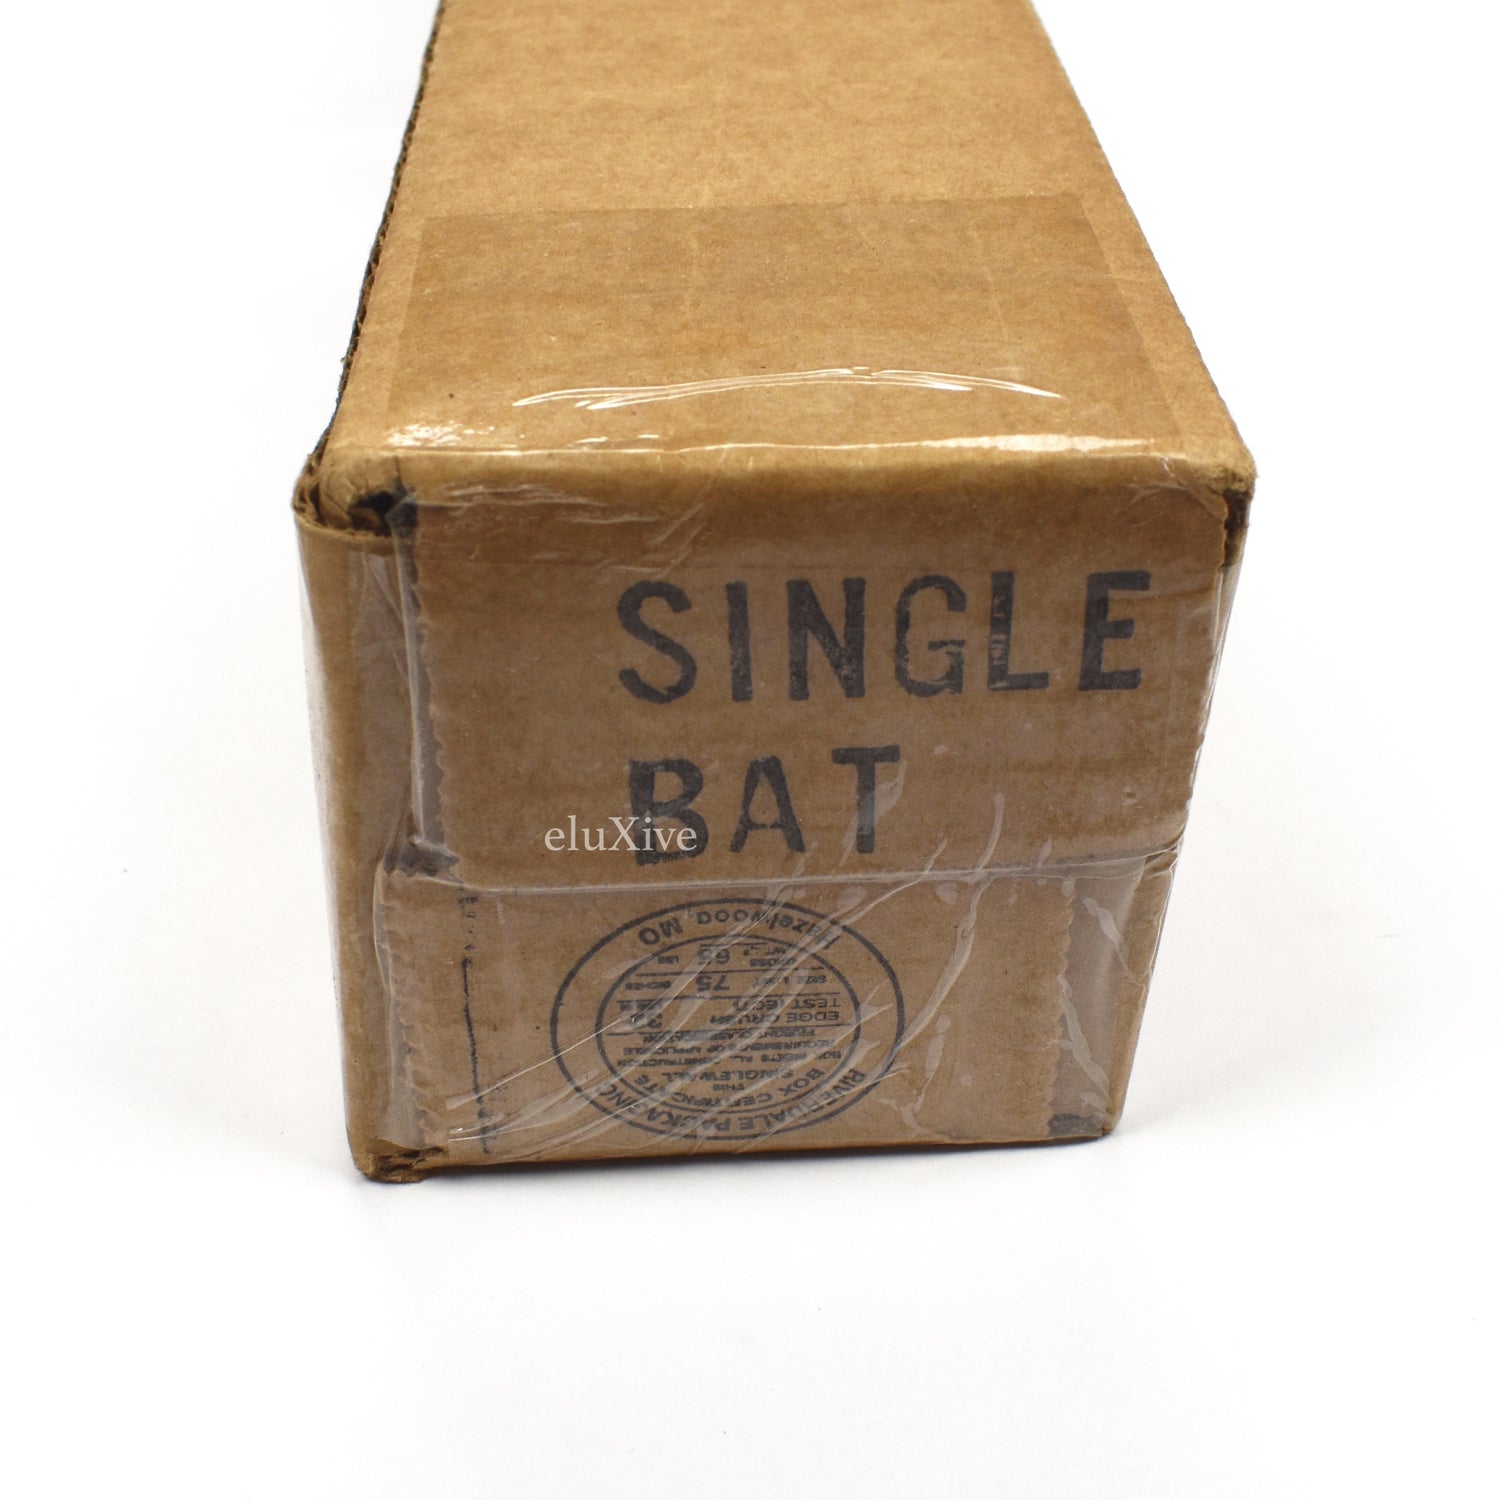 Supreme Rawlings Chrome Maple Wood Baseball Bat 'Red